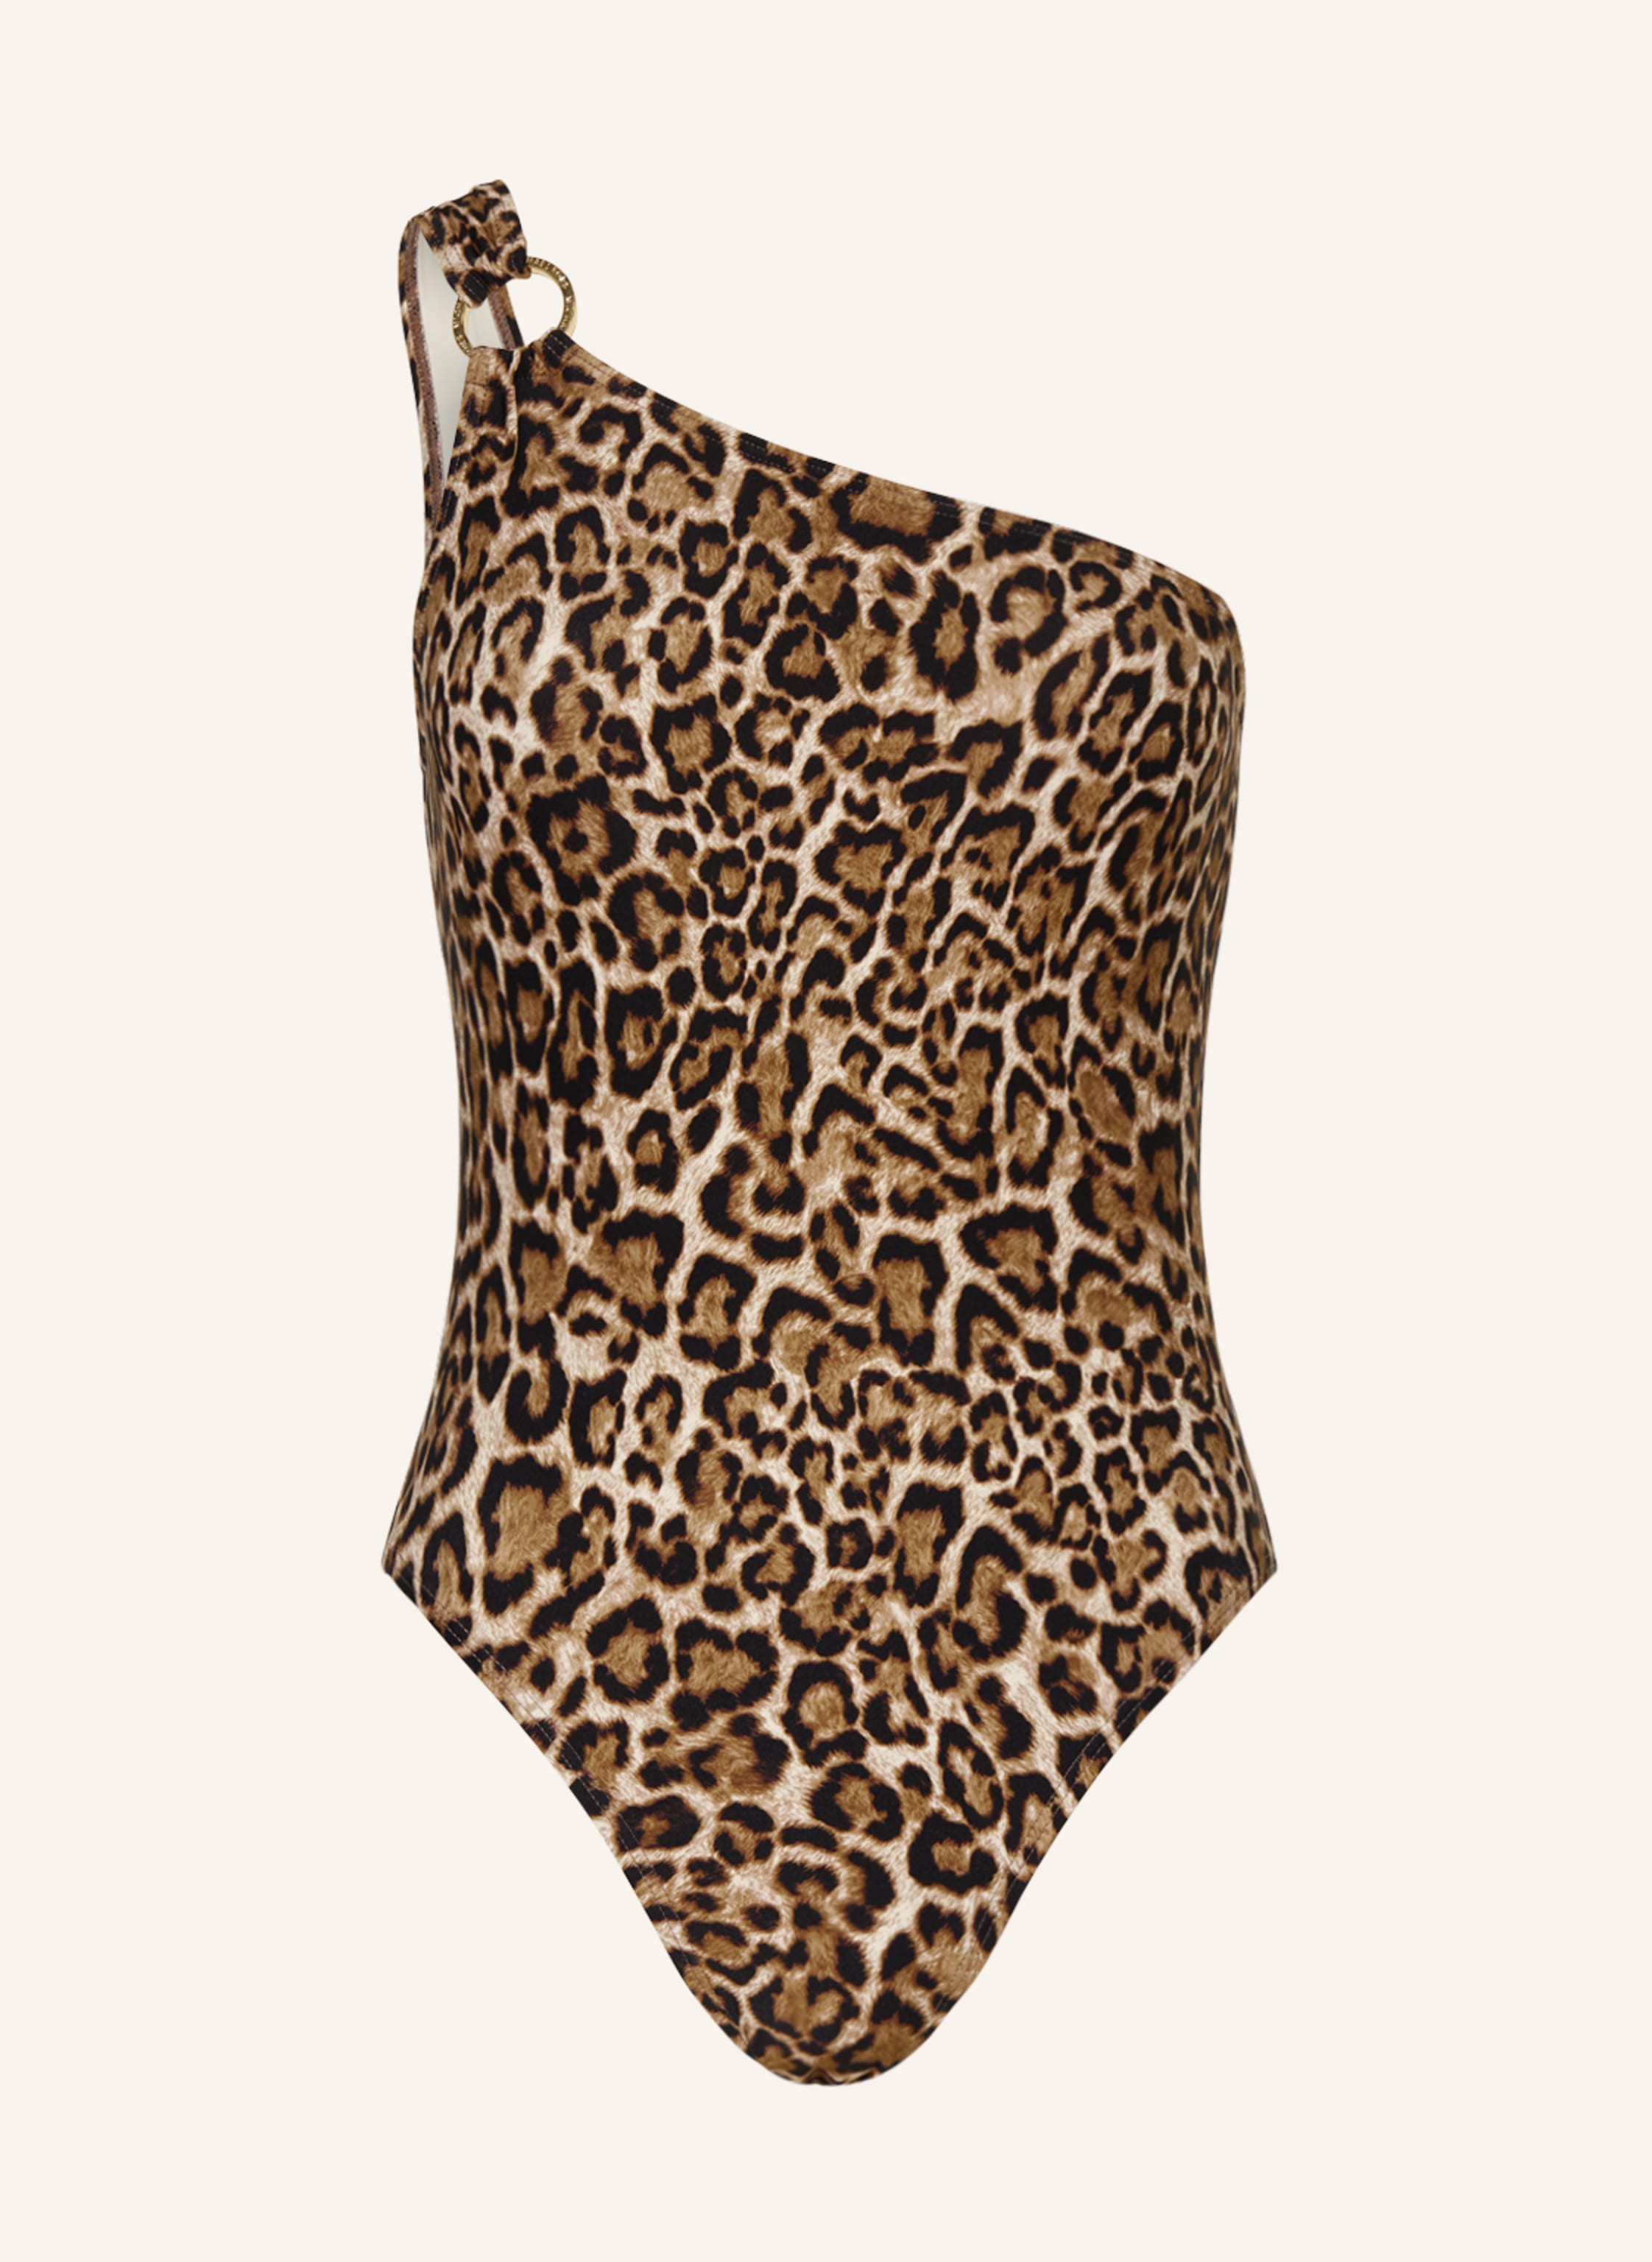 MICHAEL KORS One-shoulder swimsuit WILDCAT in brown/ black | Breuninger